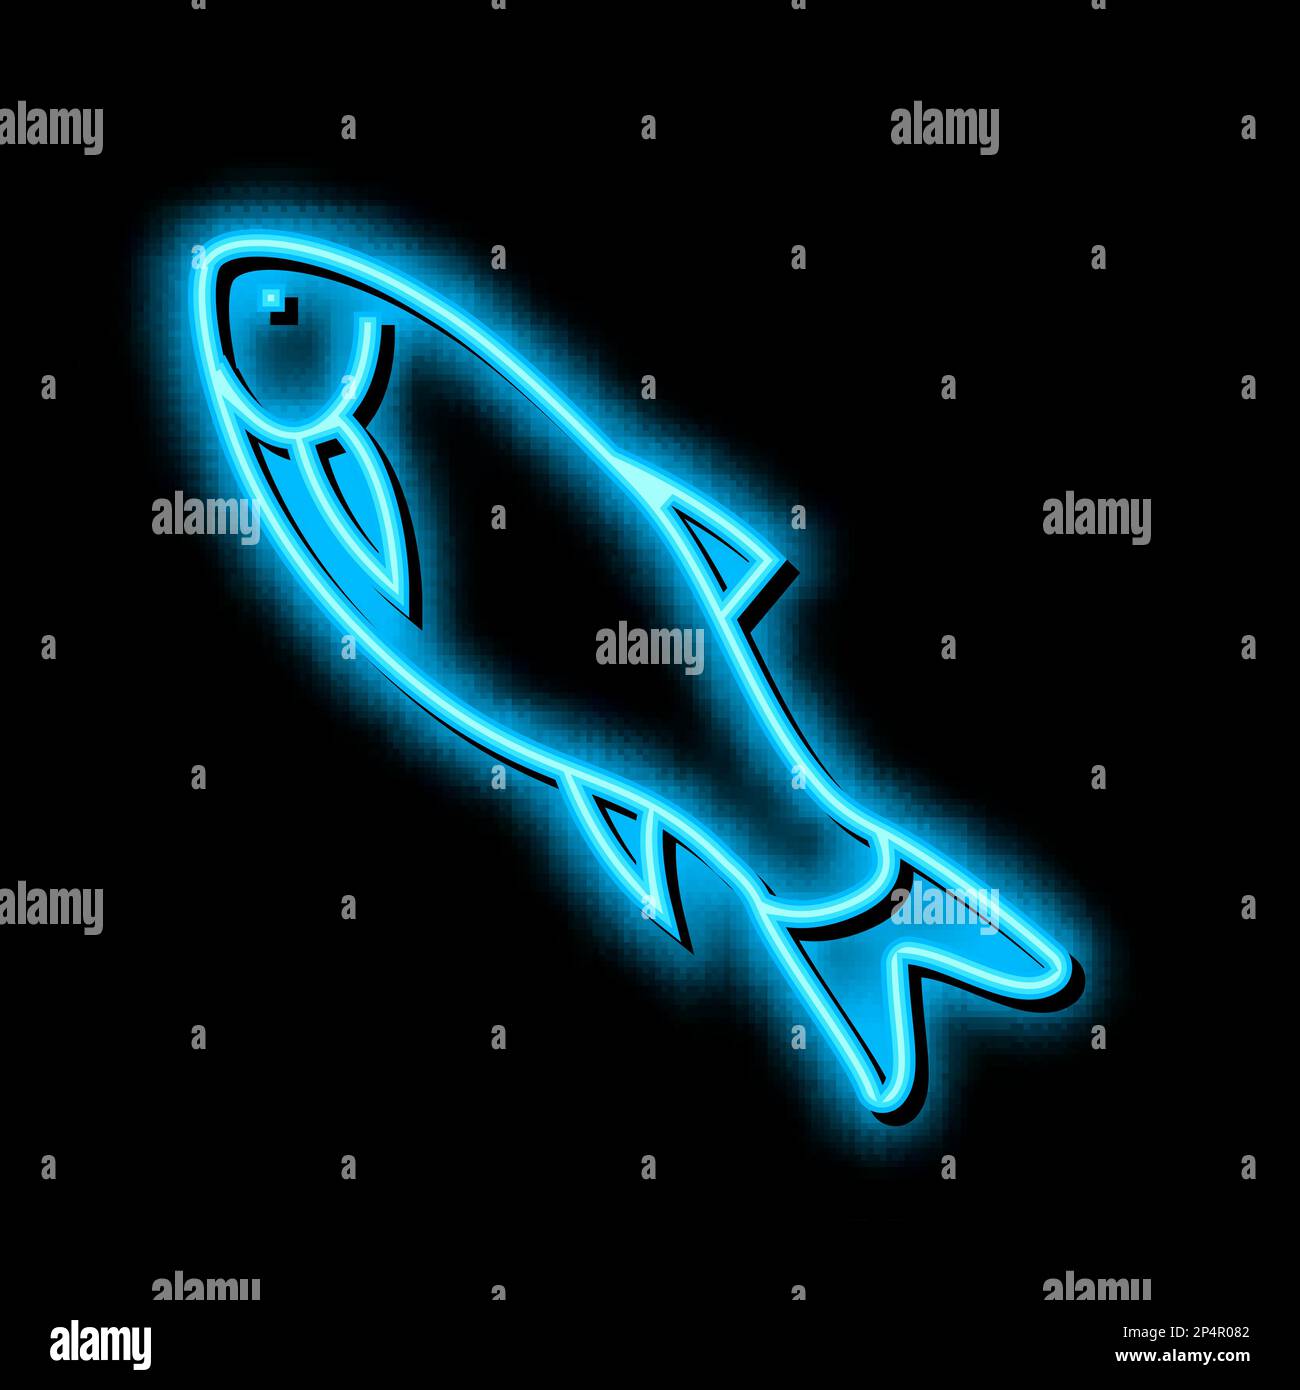 Rohu-Fisch-Symbol mit Neonlicht Stock Vektor